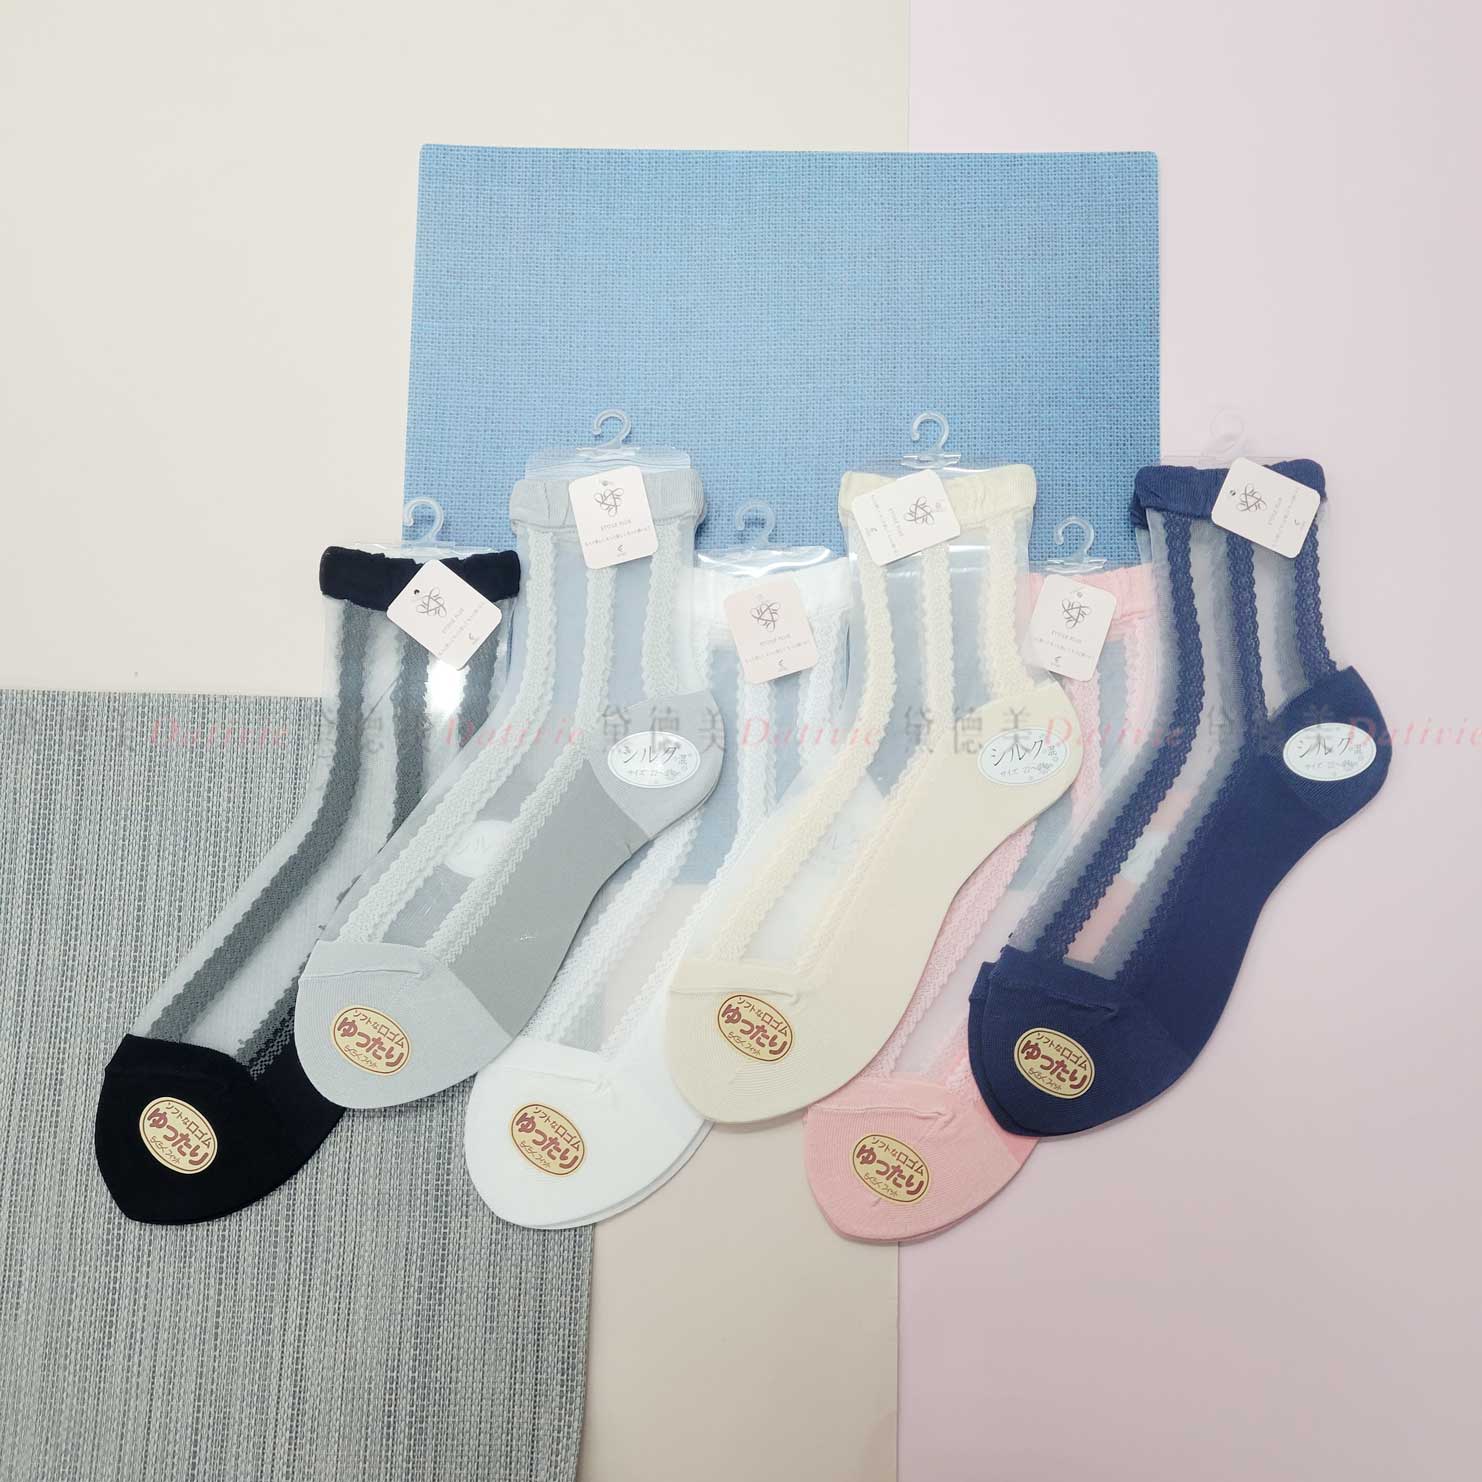 日本襪 透膚 條紋 花邊 少女襪 24-26cm-日本製造